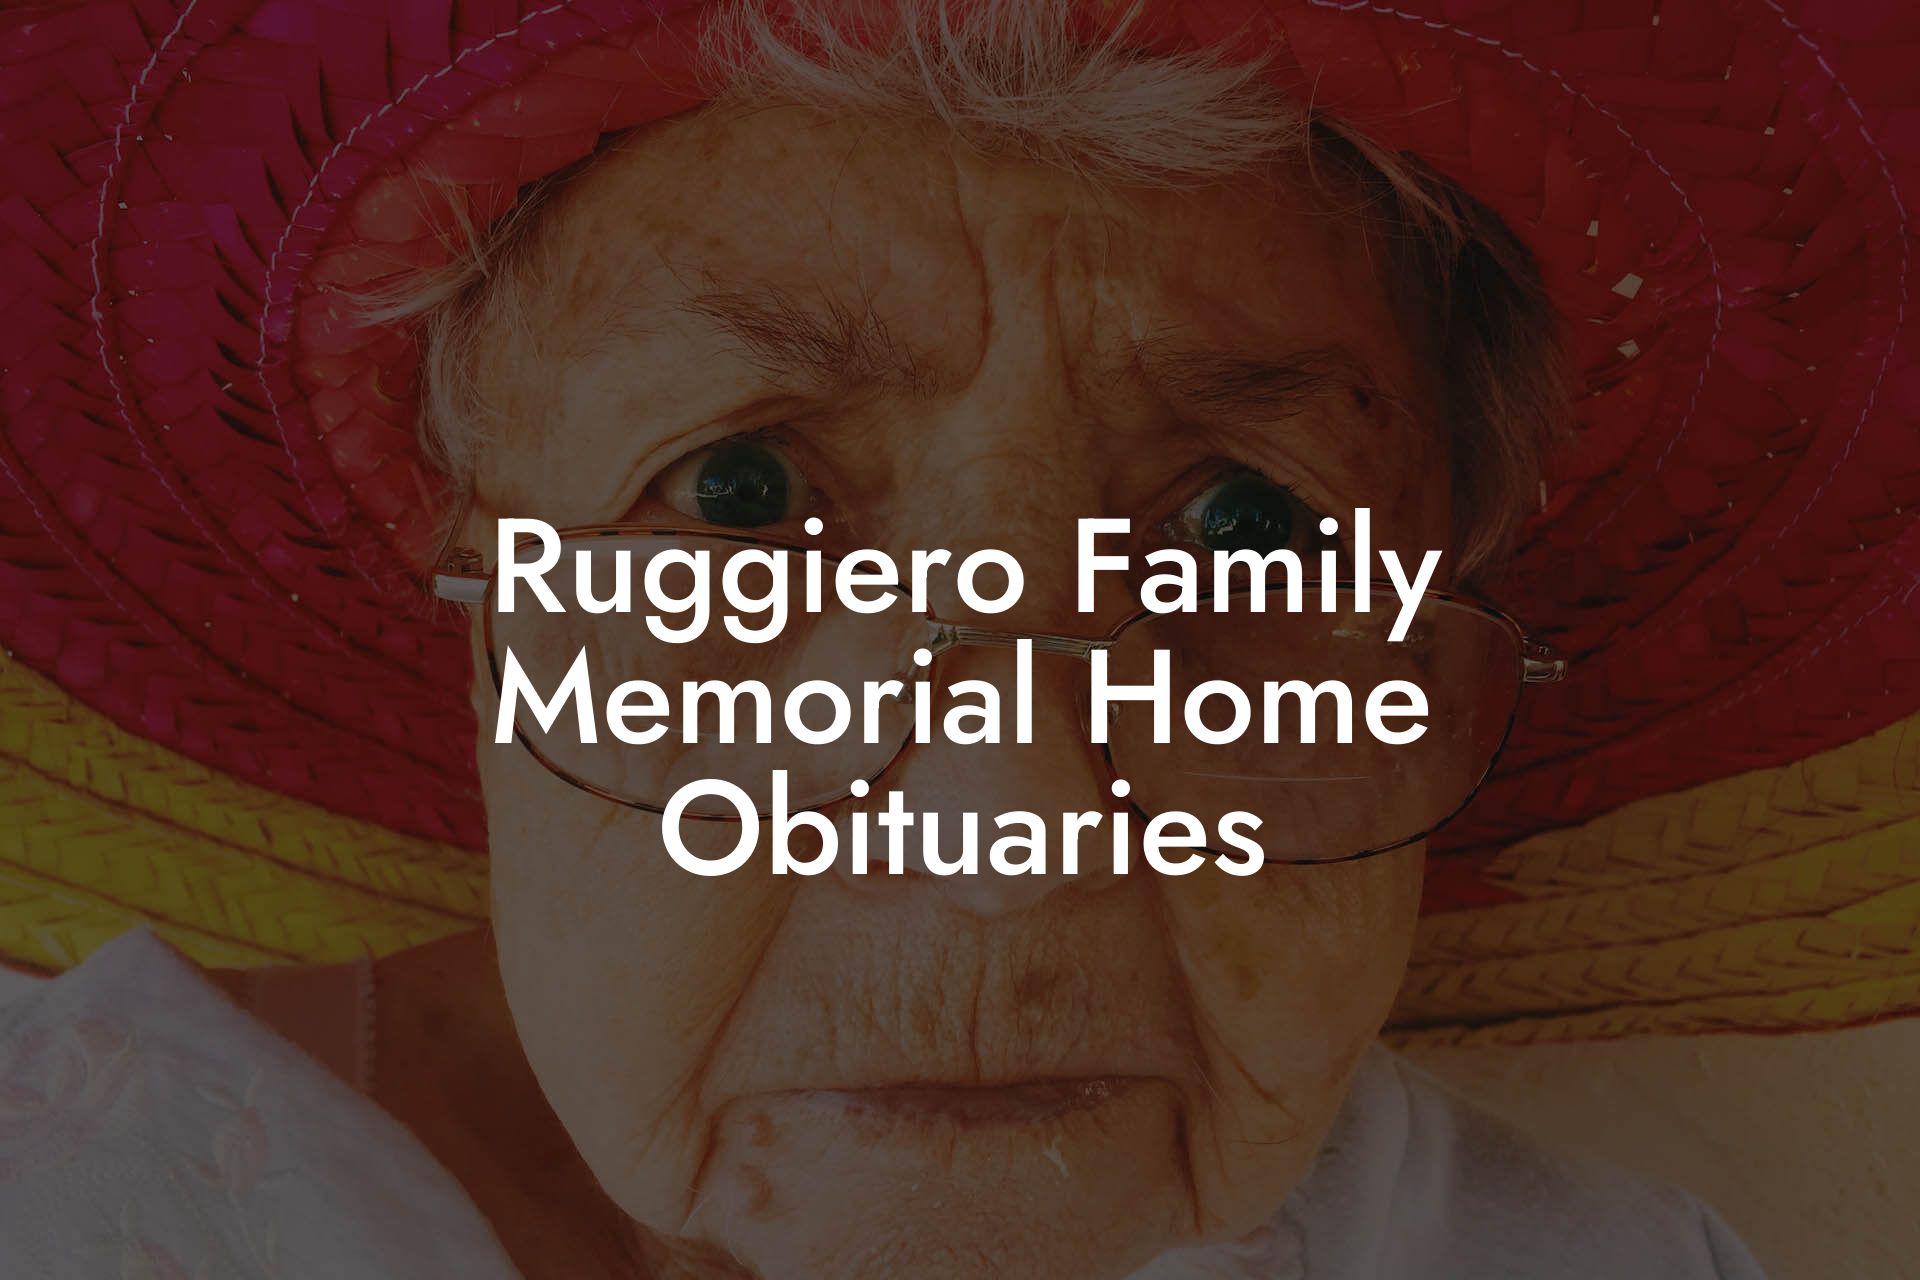 Ruggiero Family Memorial Home Obituaries